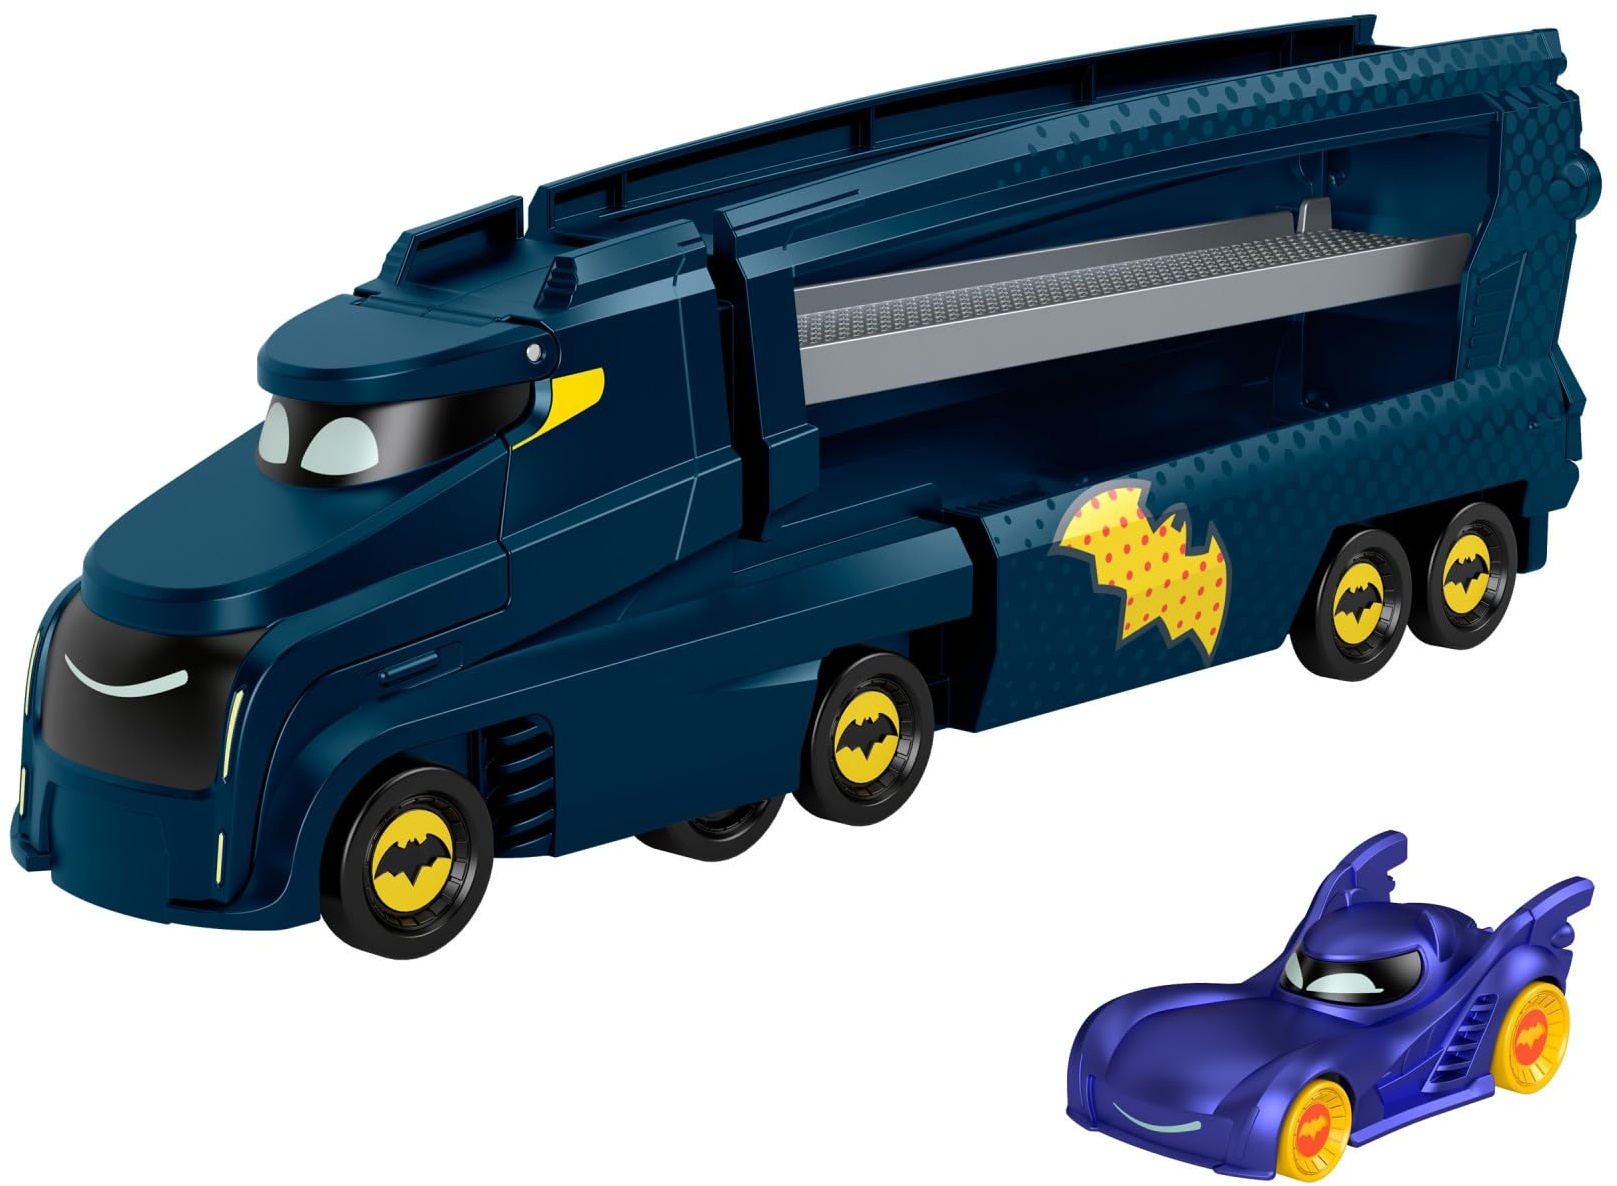 Fisher-Price DC Batwheels Spielzeug-Transporter und Auto, Bat-Großtransporter mit Rampe und Bam das Batmobil, Maßstab 1:55, Die-Cast Spielzeug-Fahrzeug, ab 3 Jahren, HMX07